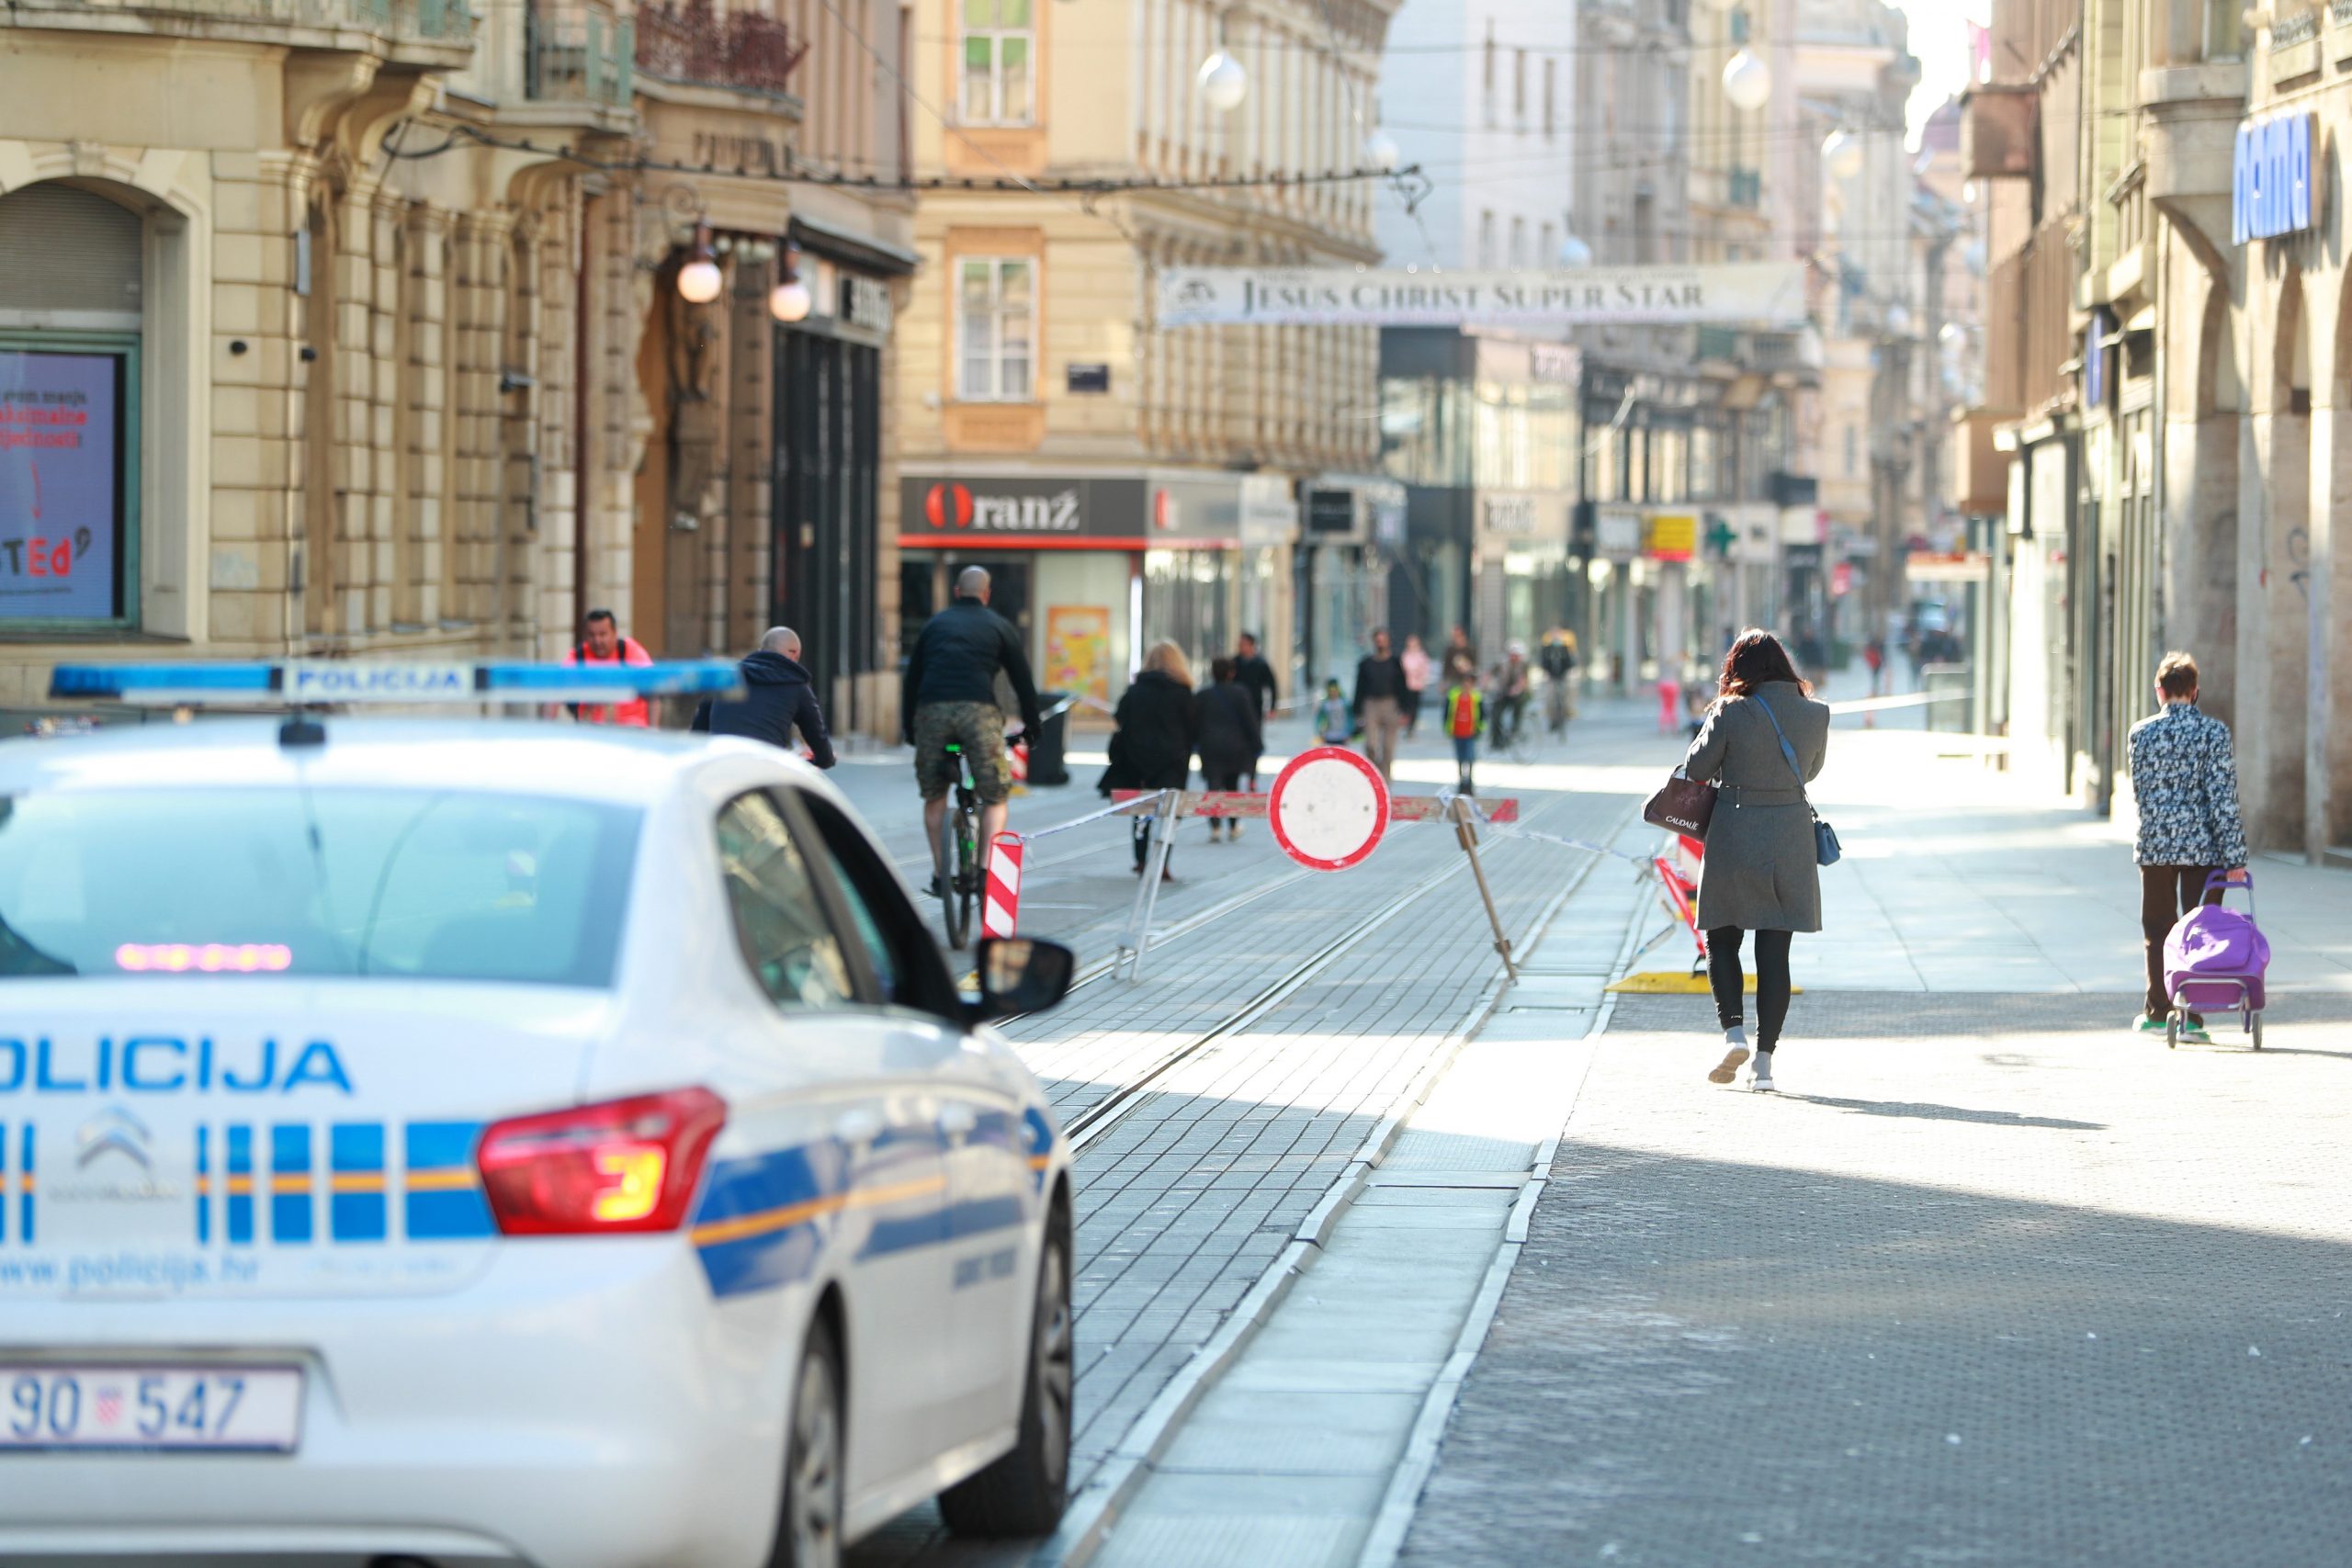 06.04.2020., Zagreb - Trg bana Josipa Jelacica. Policijski automobil u ophodnji glavnim gradskim trgom. Photo: Sanjin Strukic/PIXSELL